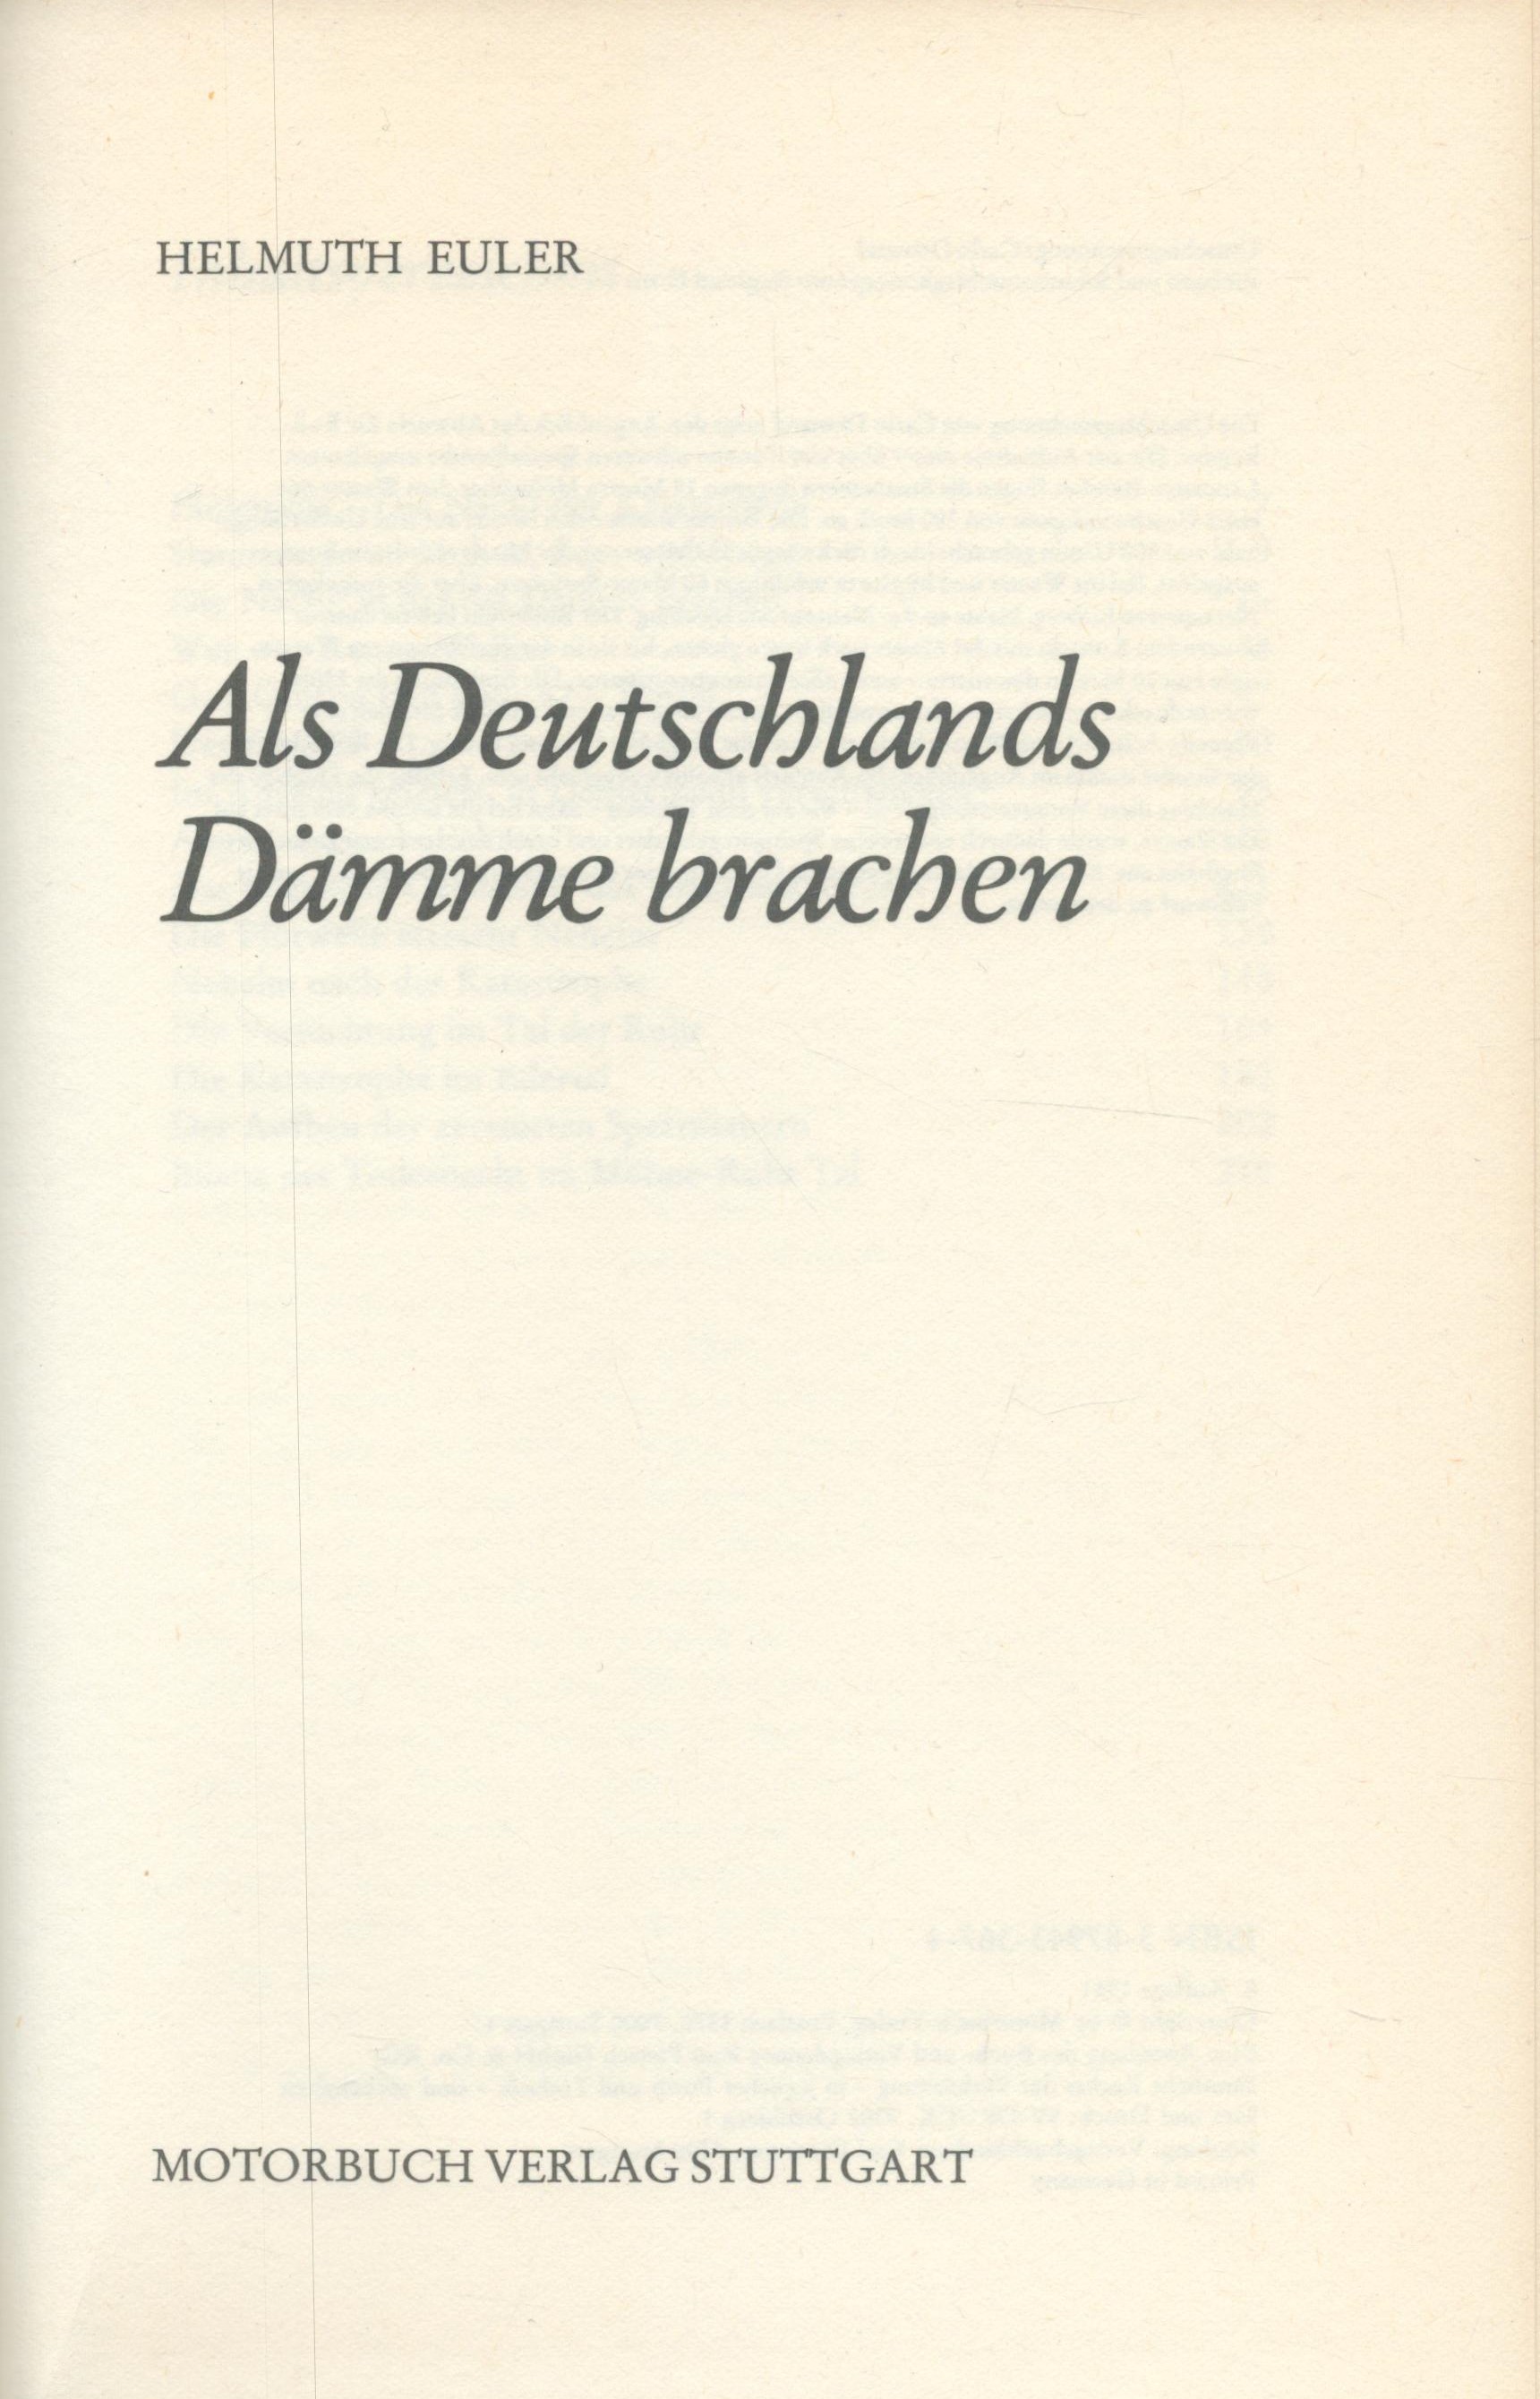 Helmut Euler Hardback Book Titled Als Deutschlands Damme Brachen. Published in 1981. 224 Pages. - Image 2 of 3